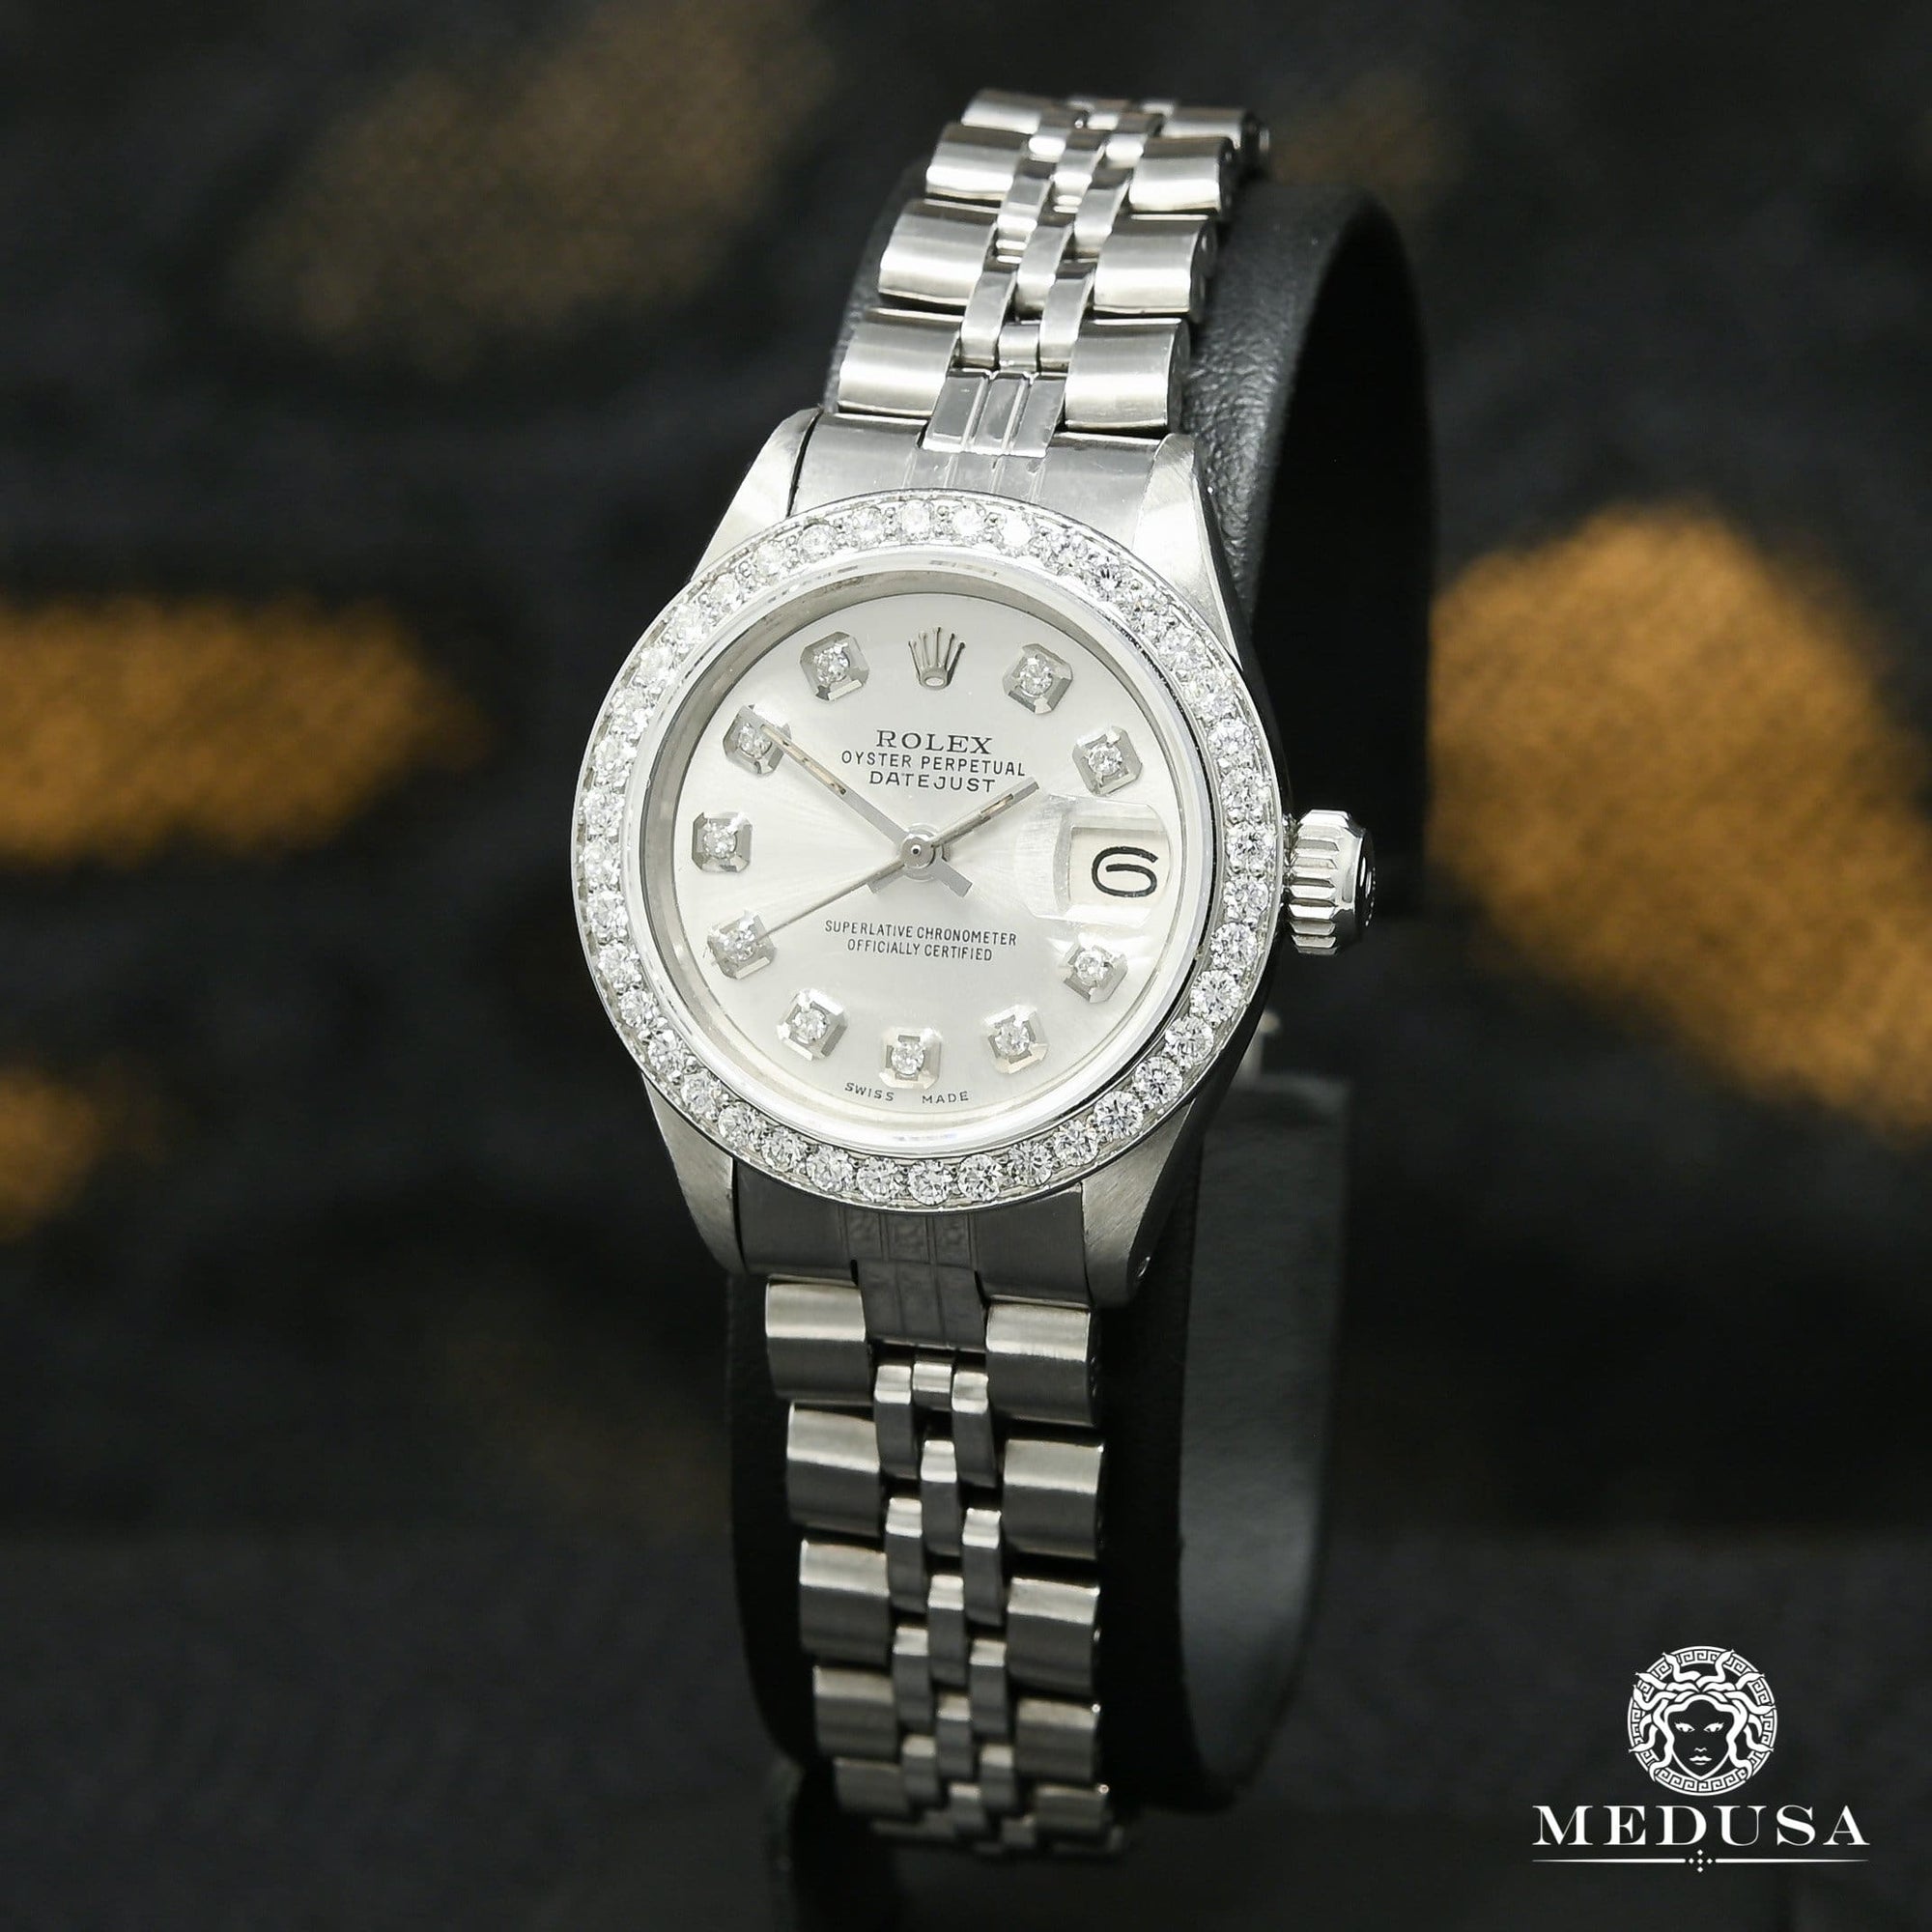 Rolex watch | Rolex Datejust 26mm Women's Watch - Silver Stainless Steel